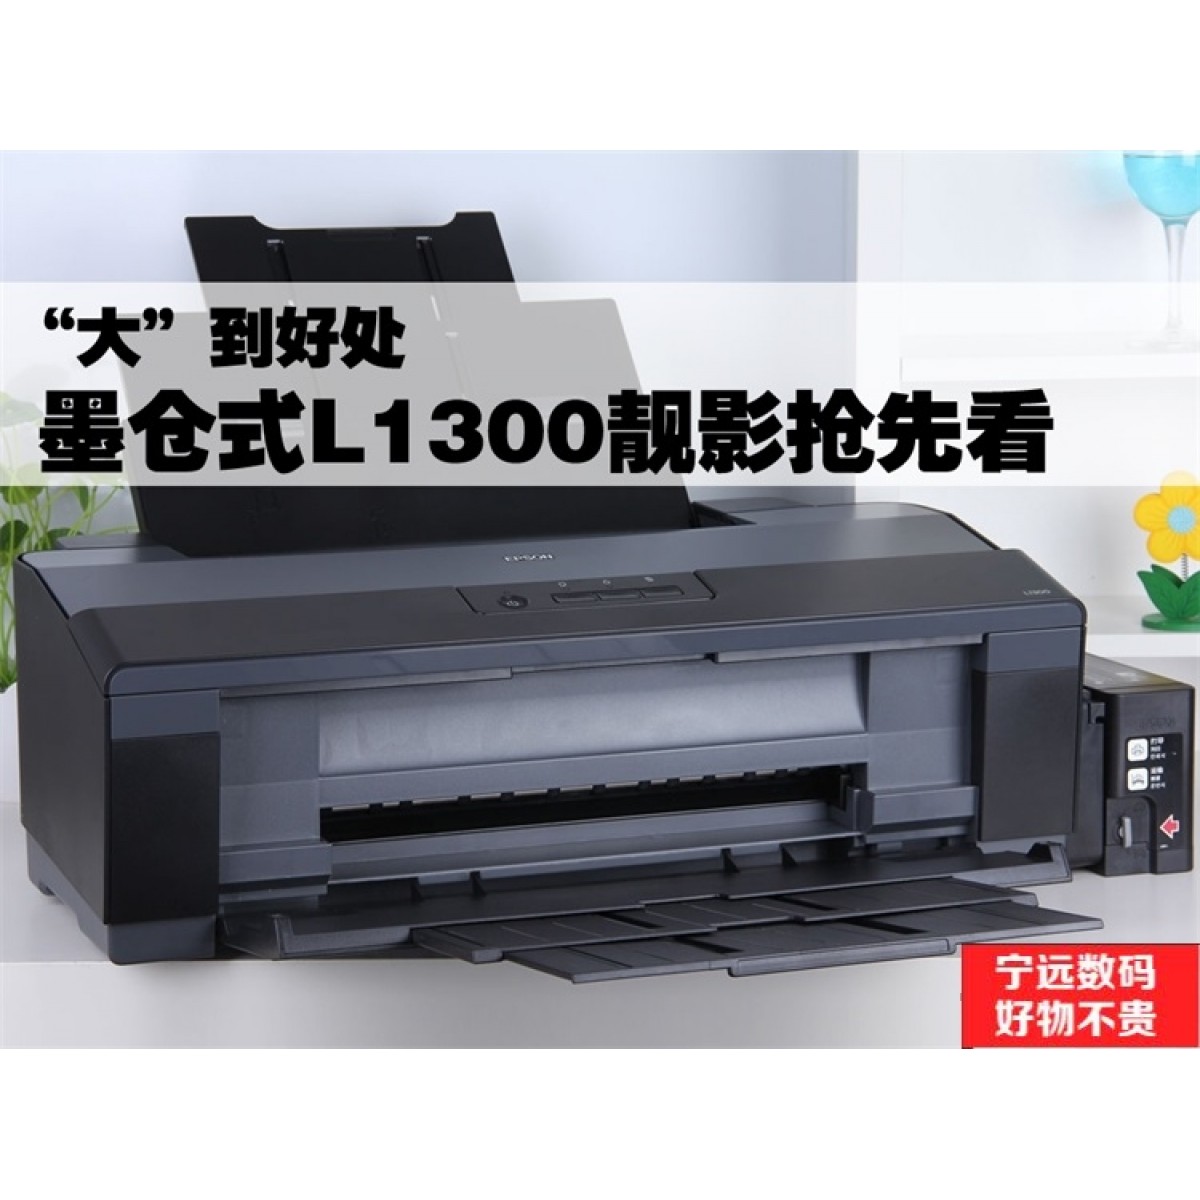 爱普生L1300墨仓喷墨A3打印机原厂连供照片草图线条图纸文档海报